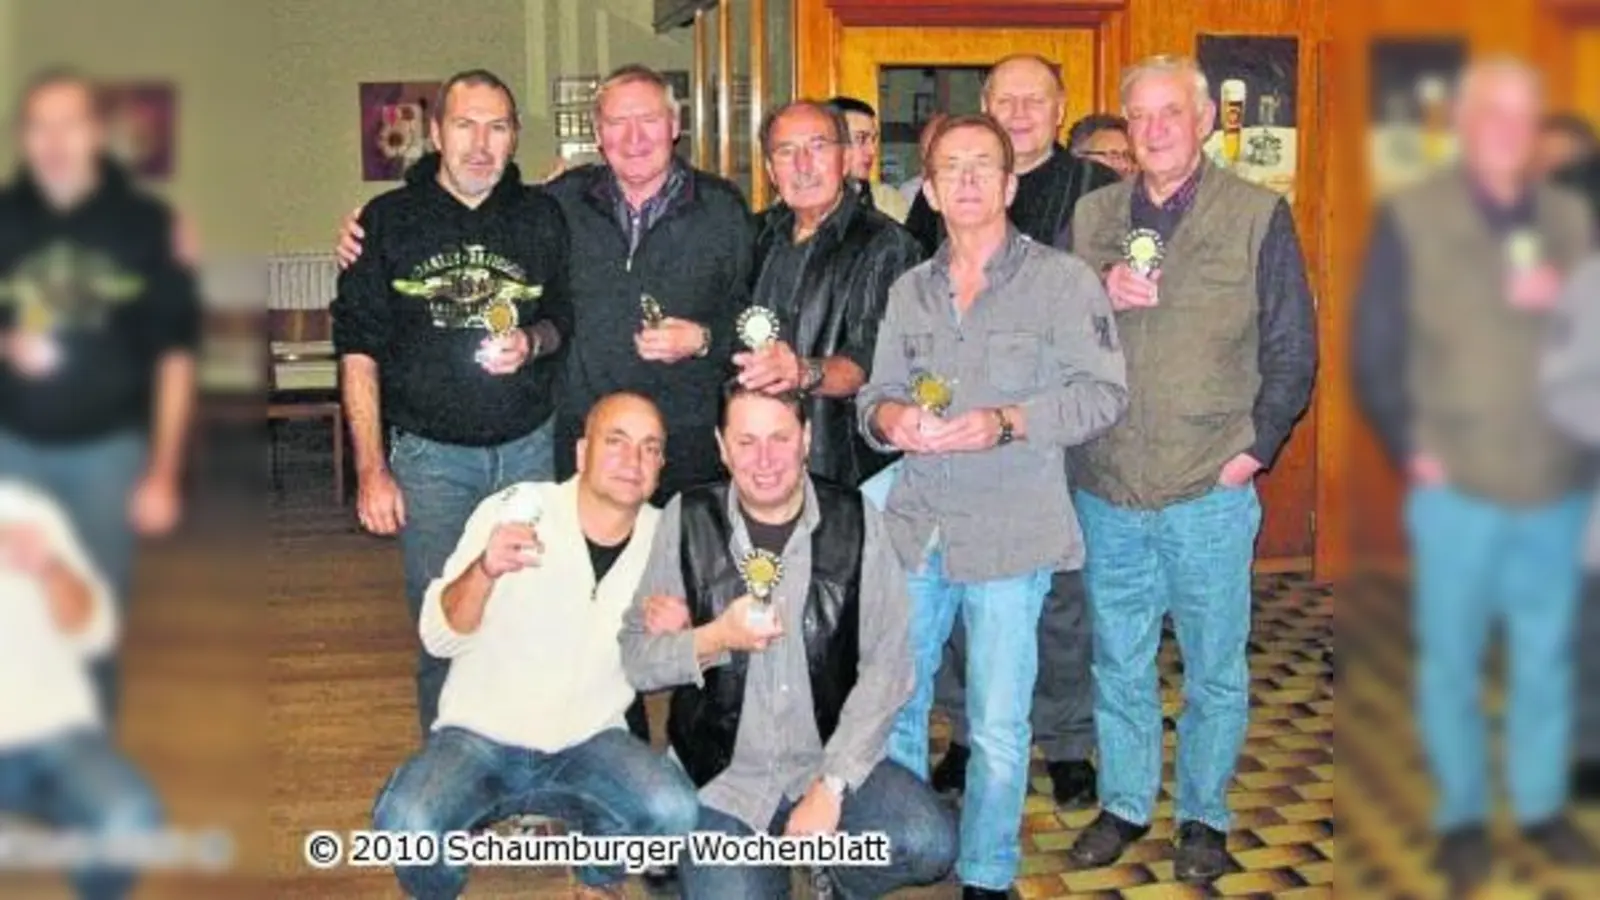 Skatspieler aus Uchtdorf triumphieren bei Turnier (Foto: pp)